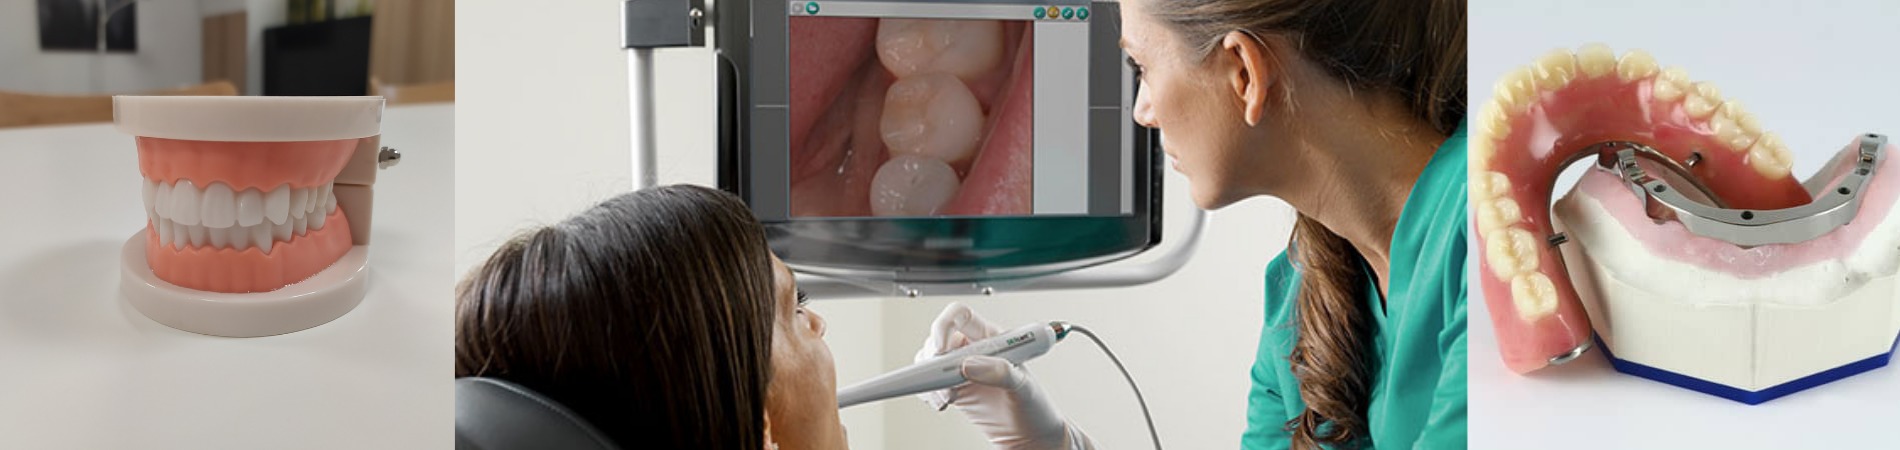 5-nouvelles-technologies-dentaires-revolutionnaires